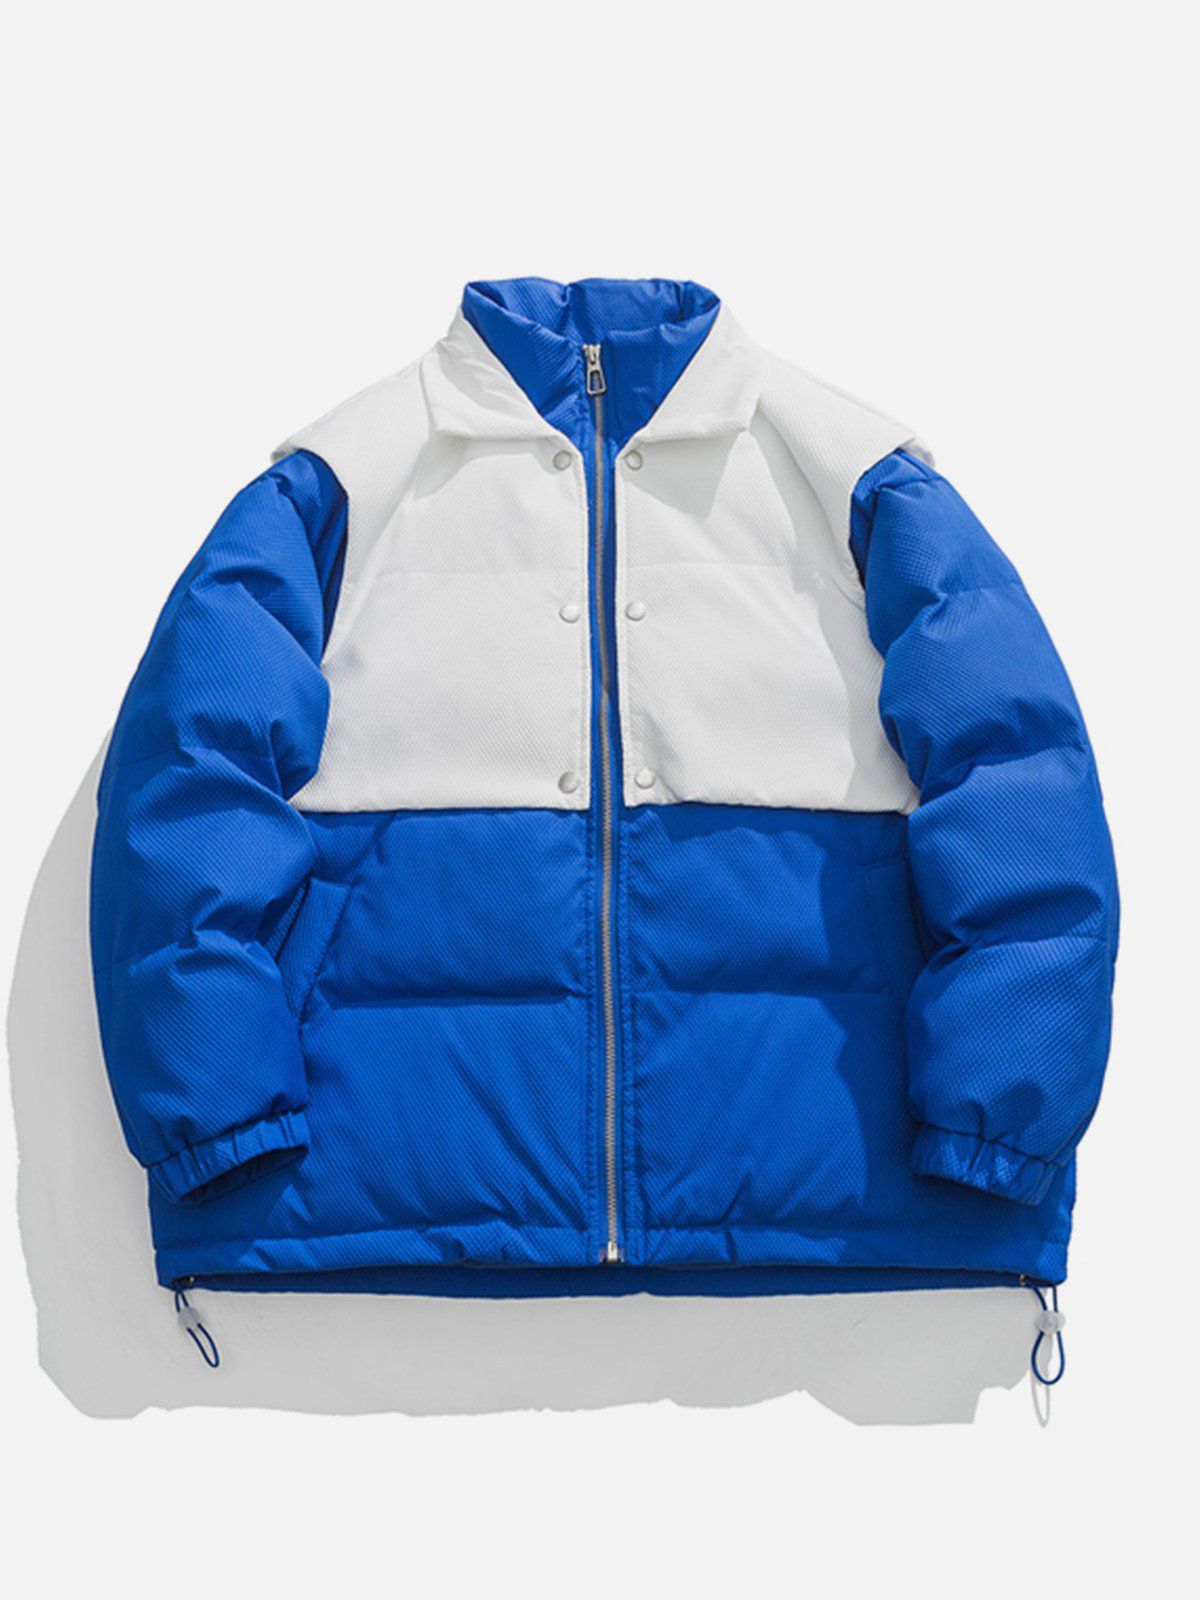 LUXENFY™ - Detachable Patchwork Vest Winter Coat luxenfy.com